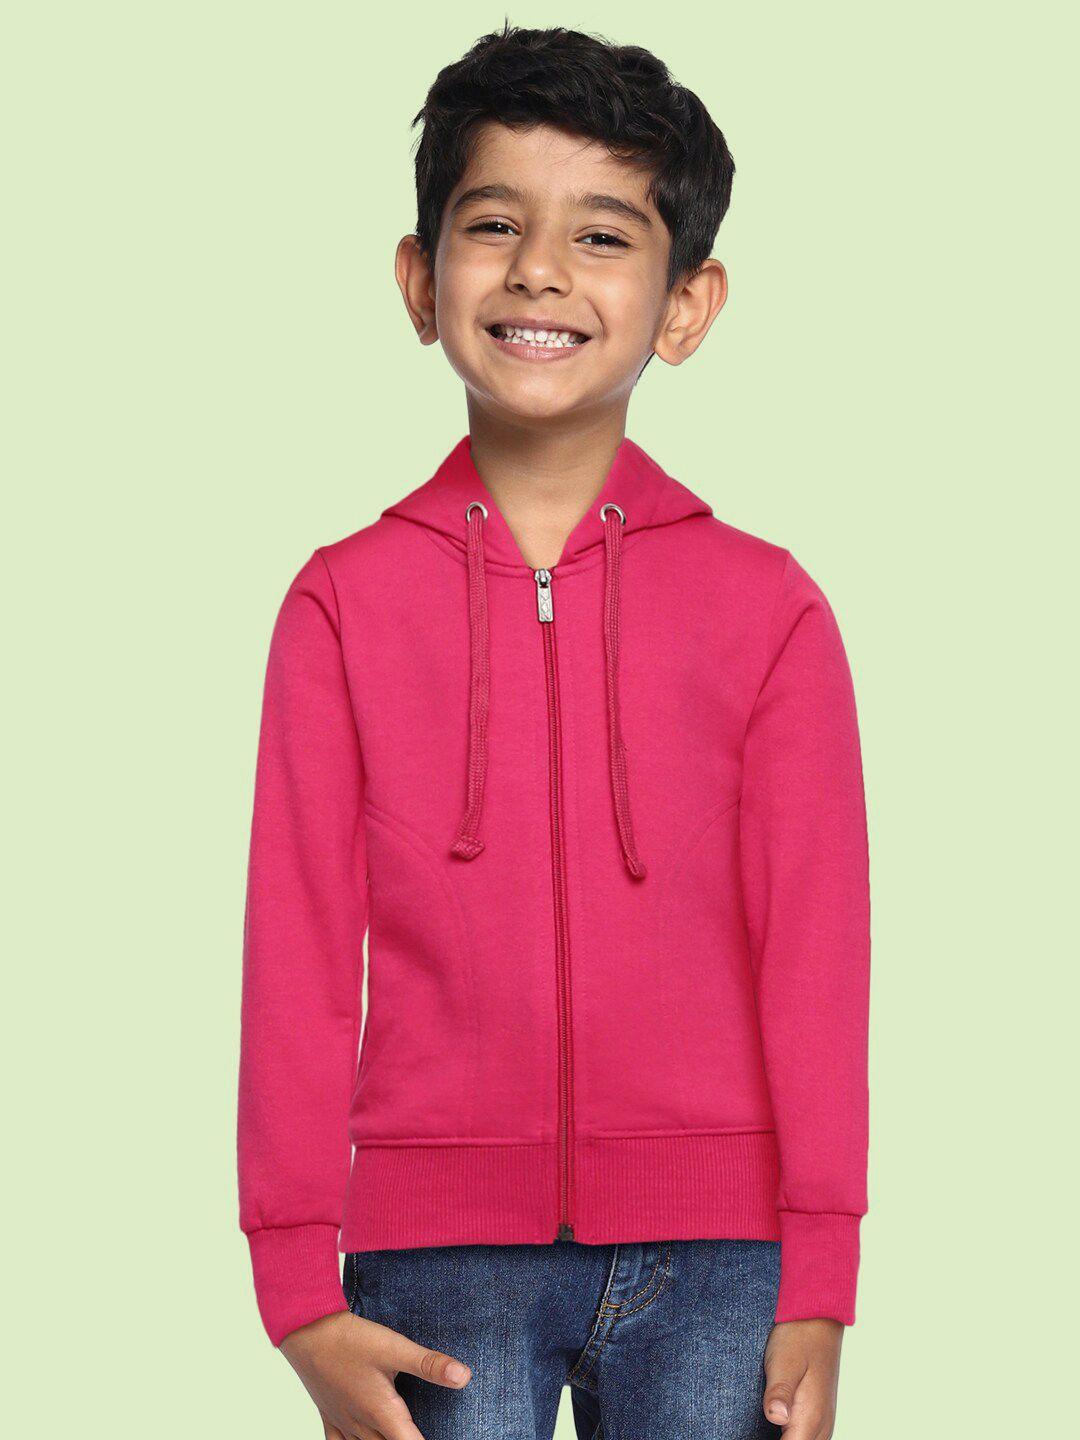 adbucks boys pink hooded sweatshirt